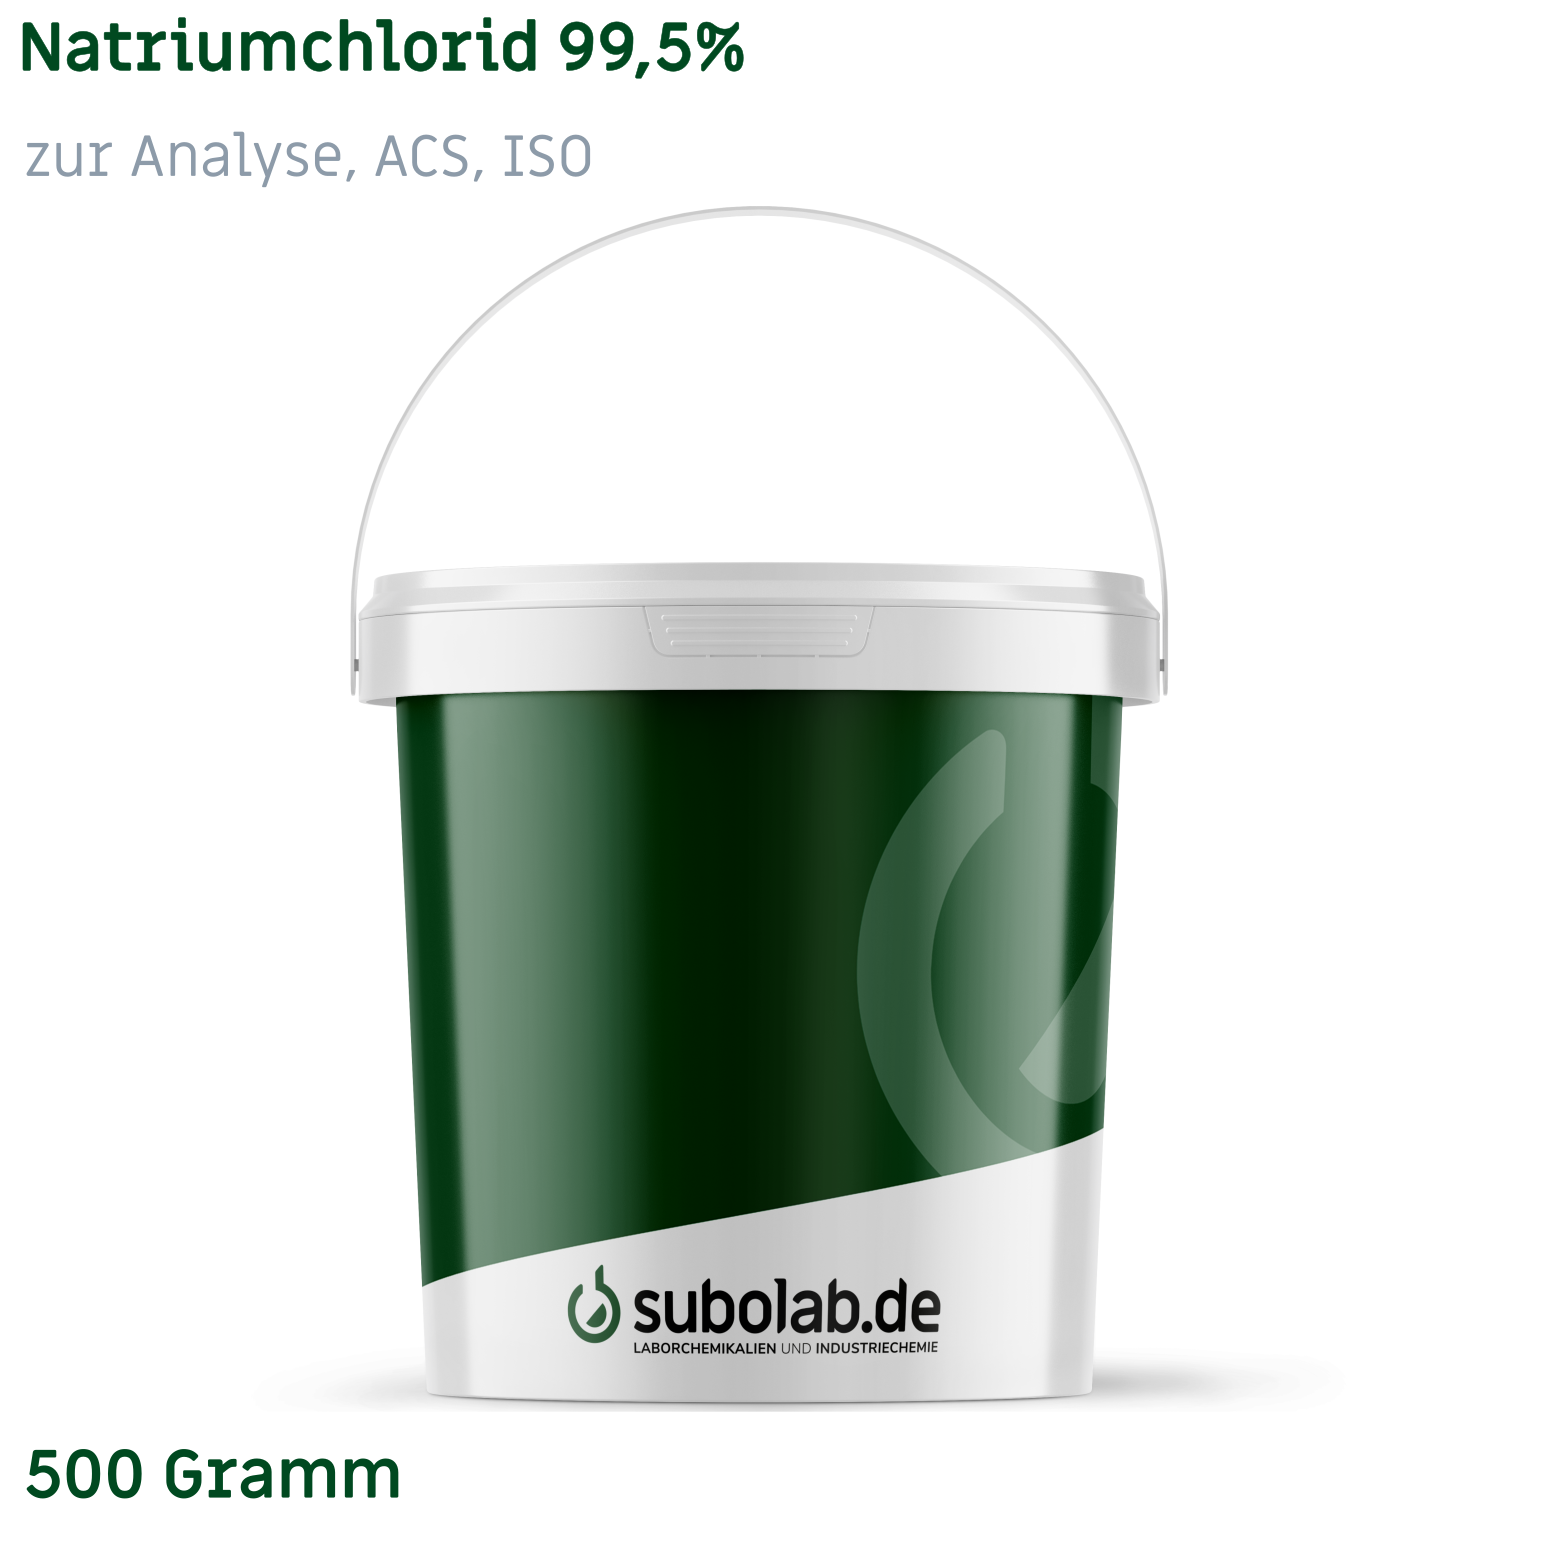 Bild von Natriumchlorid 99,5% zur Analyse, ACS, ISO (500 Gramm)